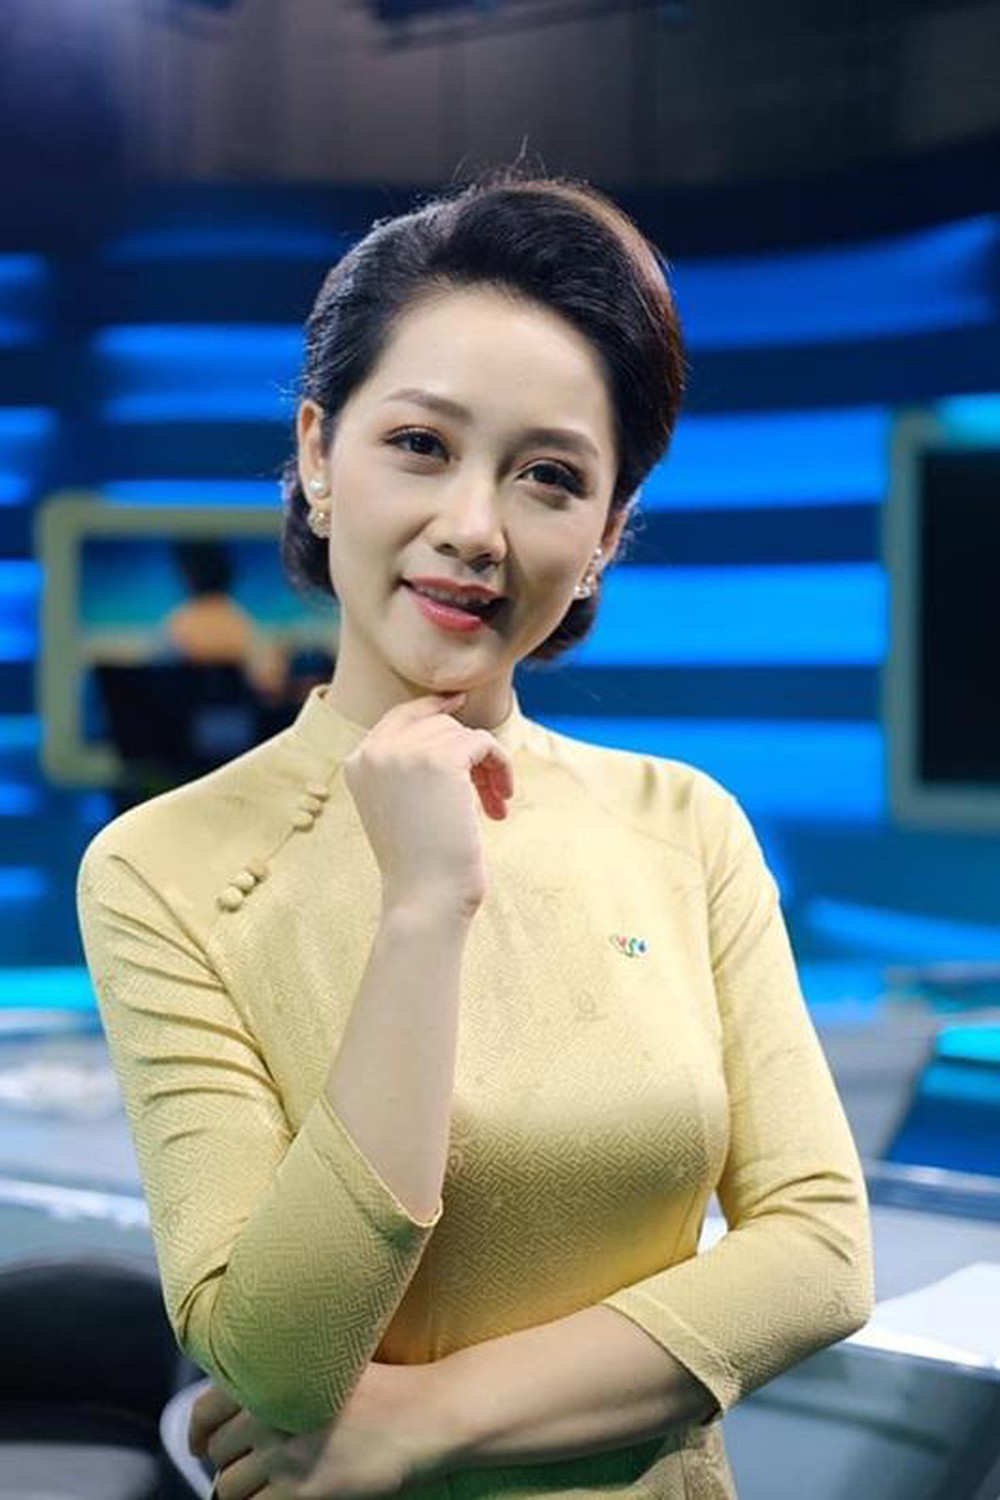 Nữ MC xinh đẹp nổi tiếng của bản tin Thời sự 19h VTV tiết lộ 